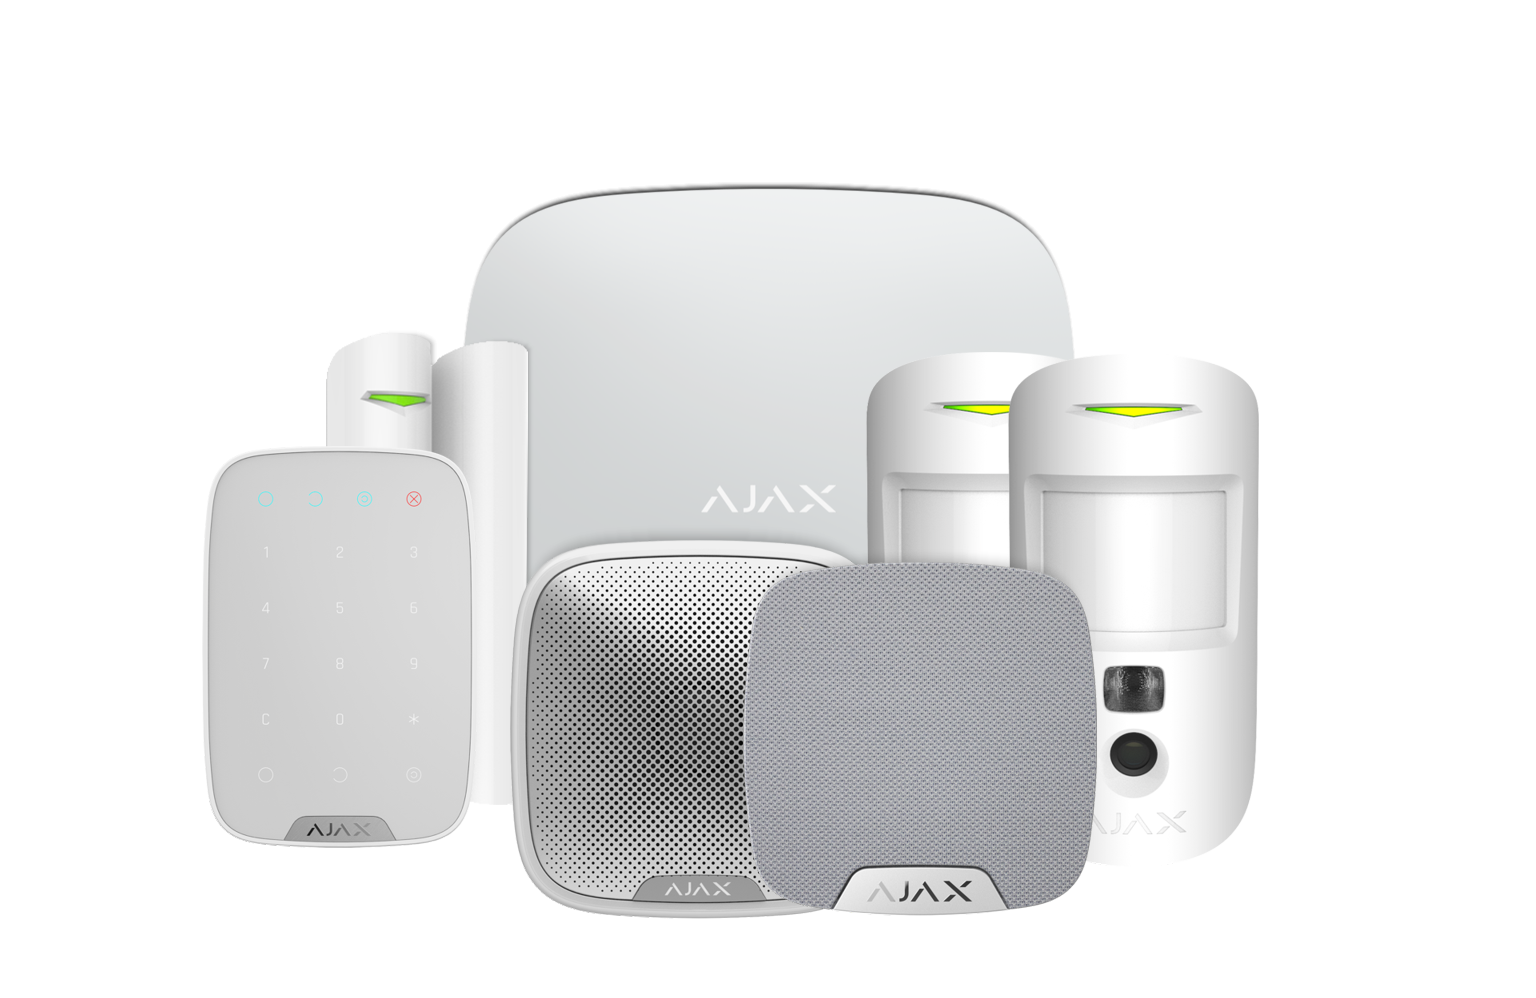 AJAX Hub 2 Kits